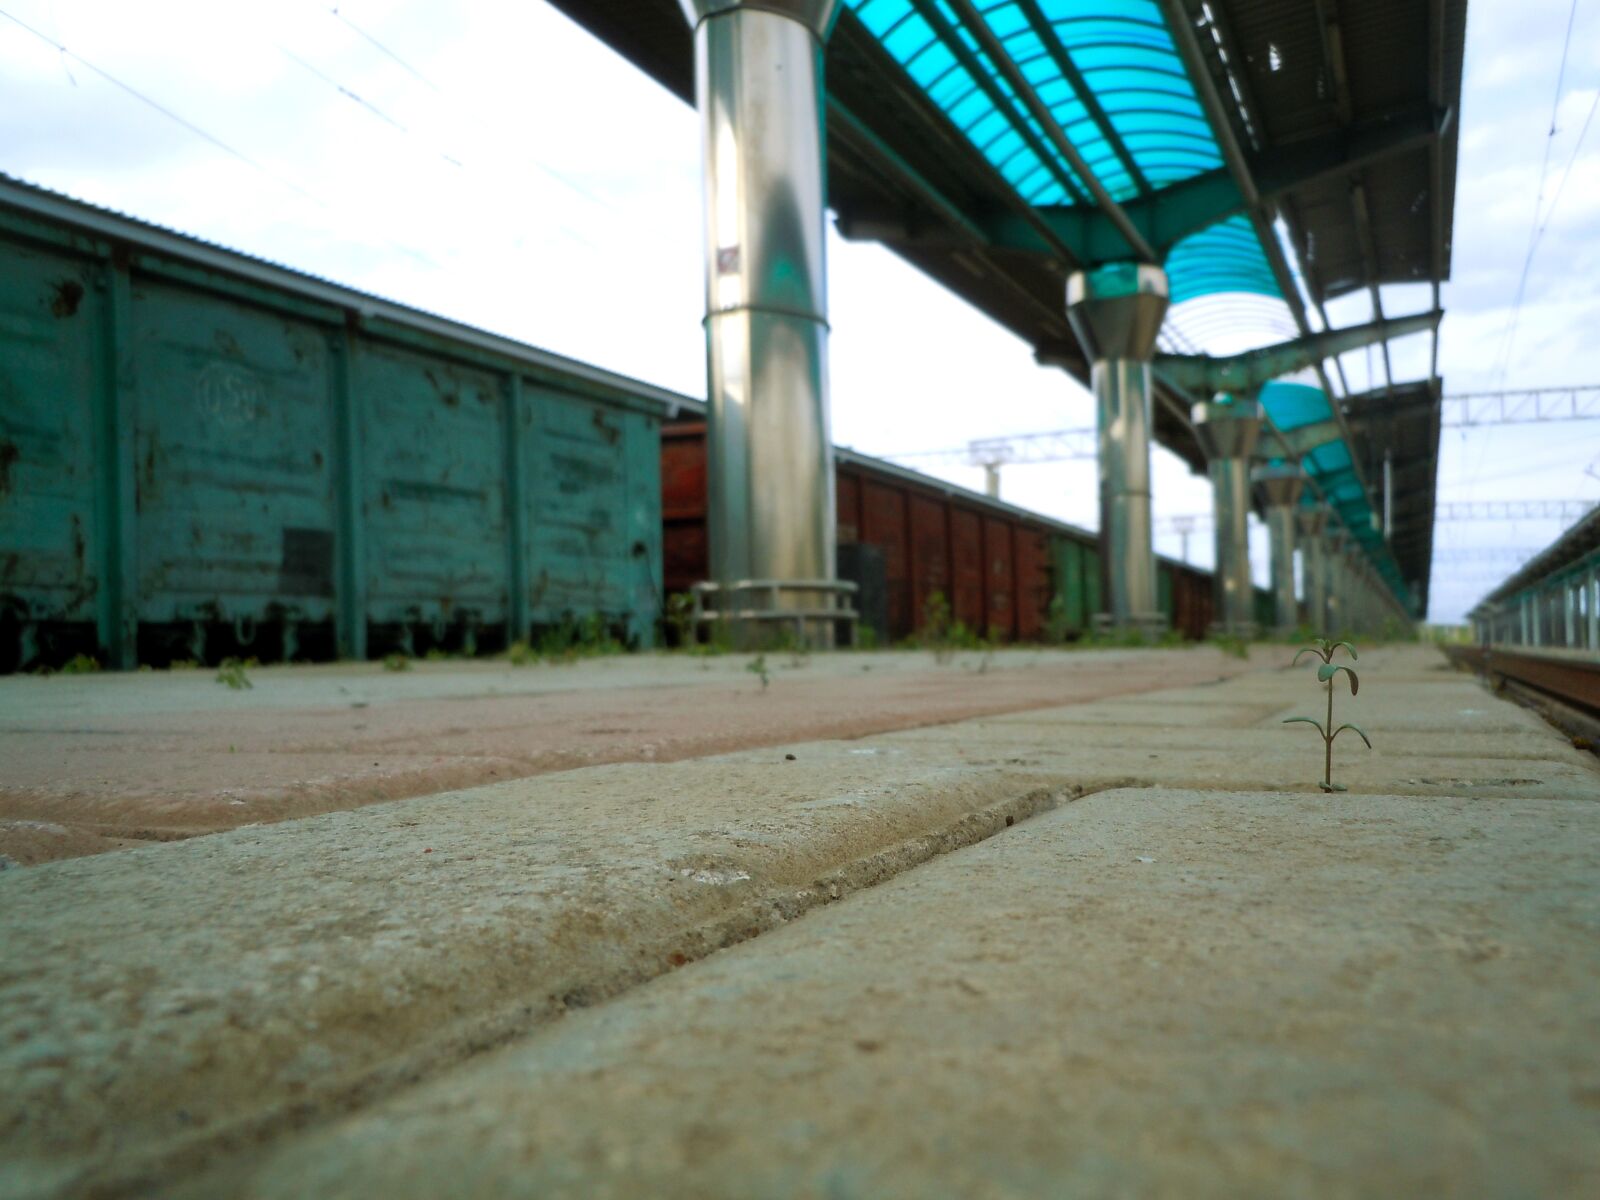 Nikon Coolpix S6000 sample photo. станция, поезд, заброшенный photography